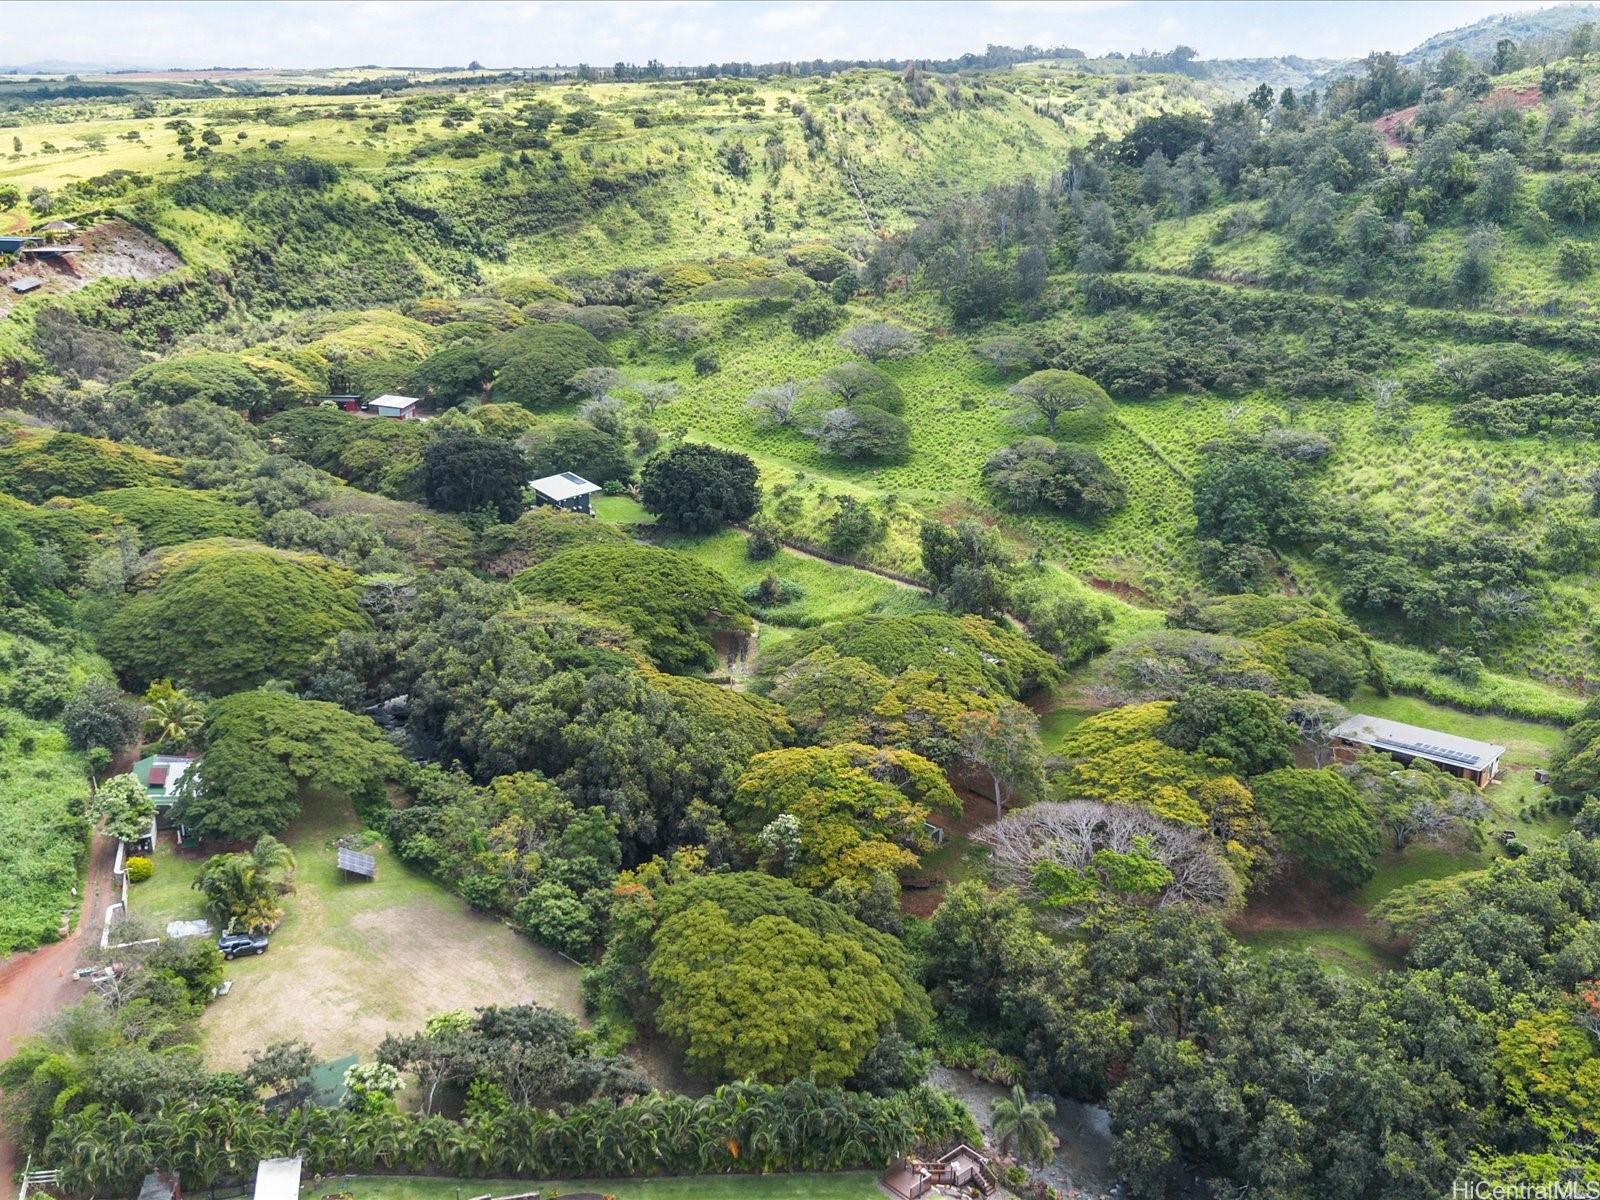 66-1479 Kaukonahua Road  Waialua, Hi vacant land for sale - photo 2 of 10